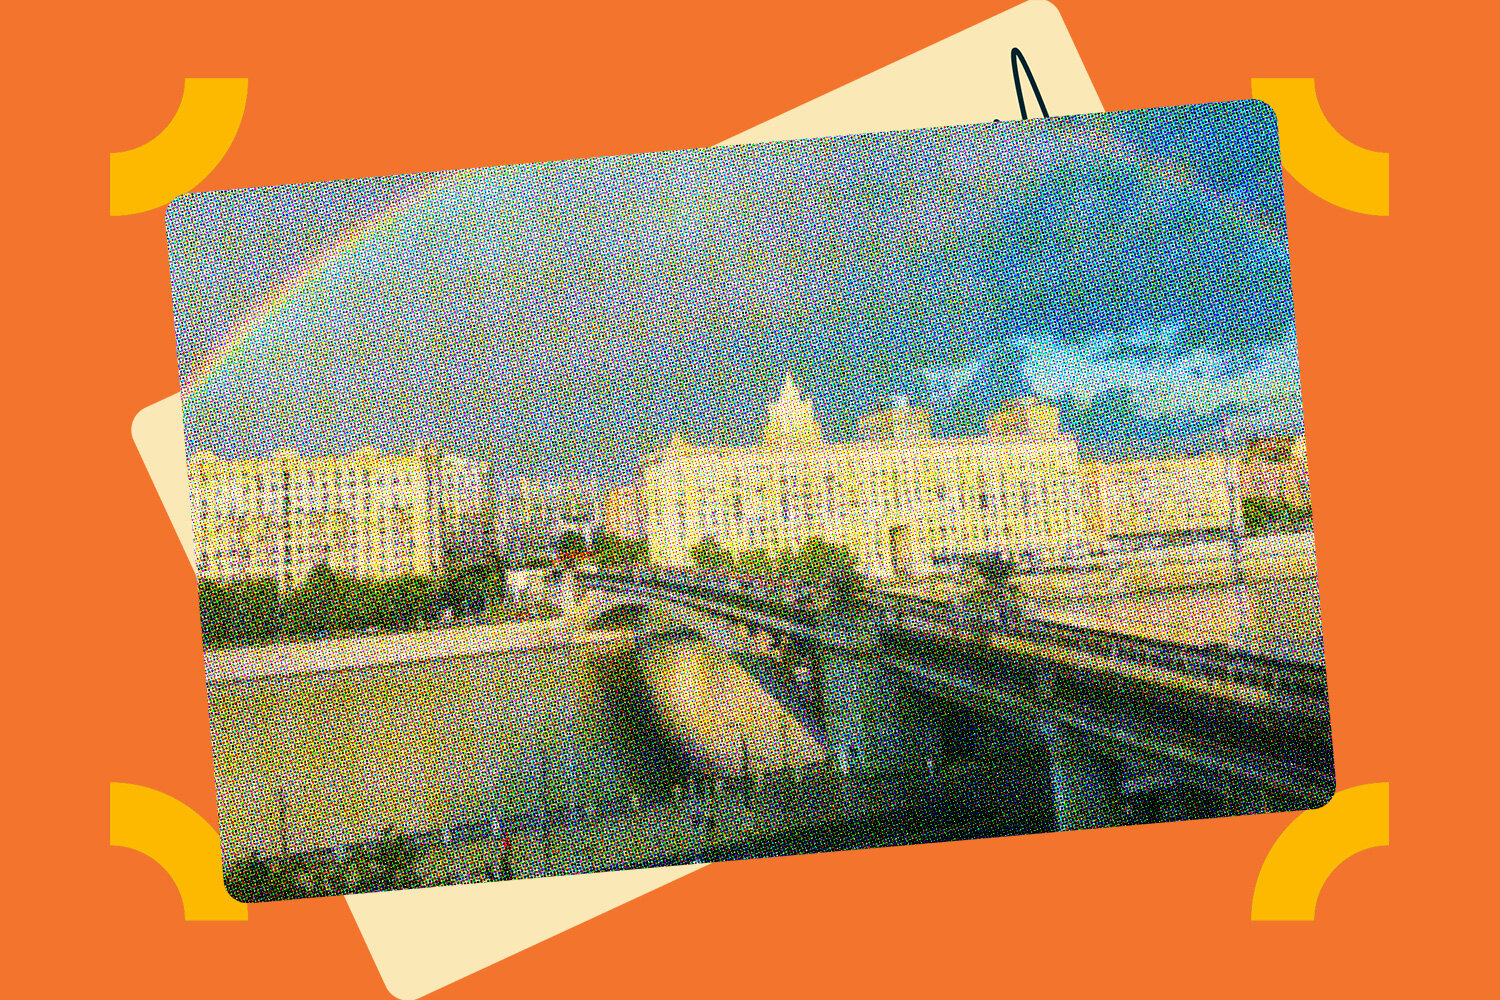 Как живётся в сталинке на набережной Тараса Шевченко с видом на Москву-реку: личный опыт